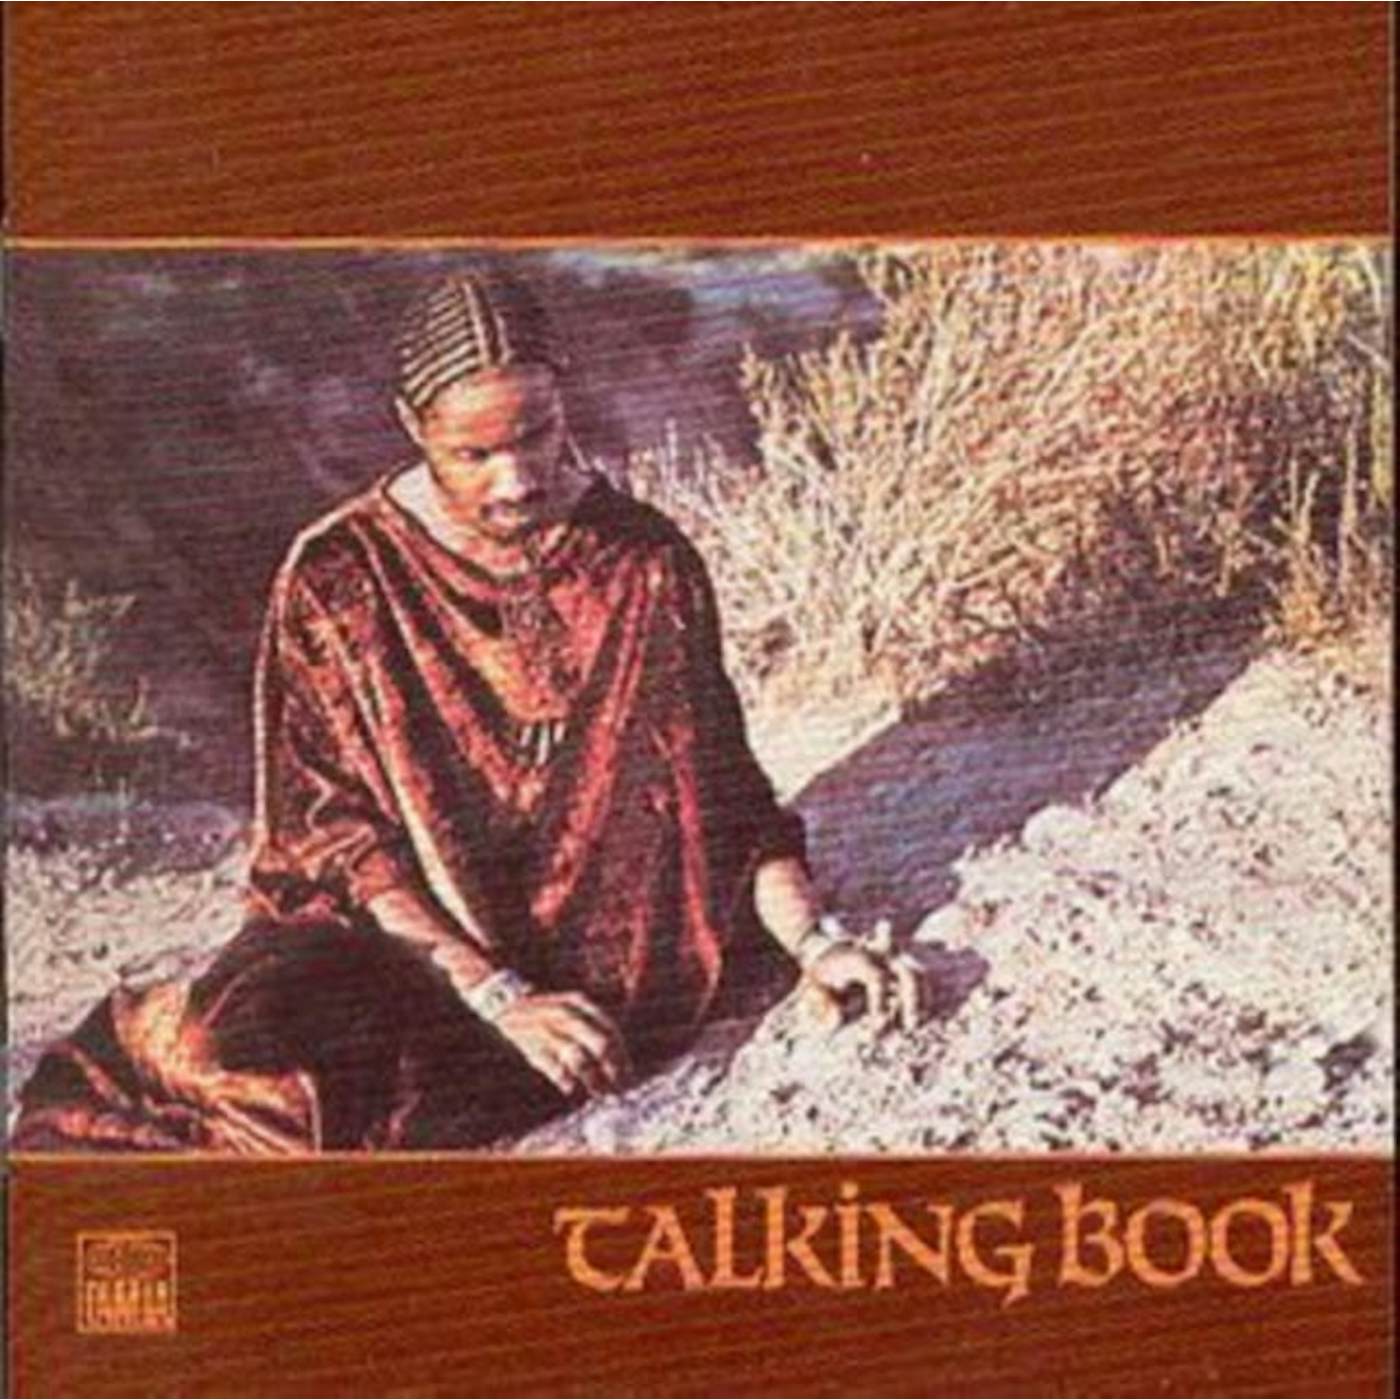 Stevie Wonder CD - Talking Book